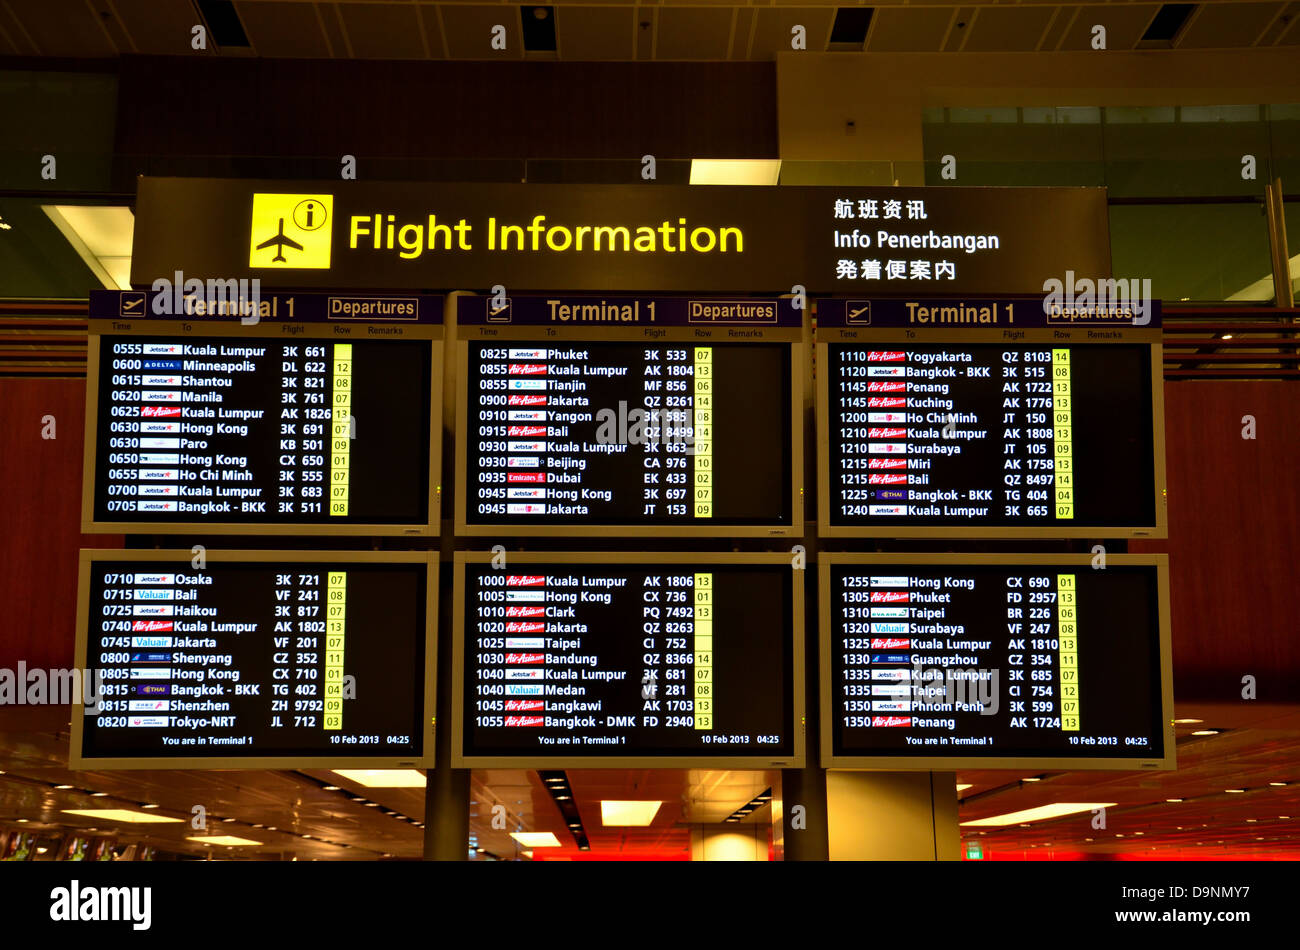 Flight information Region Jakarta. Аэропорт каира прилет